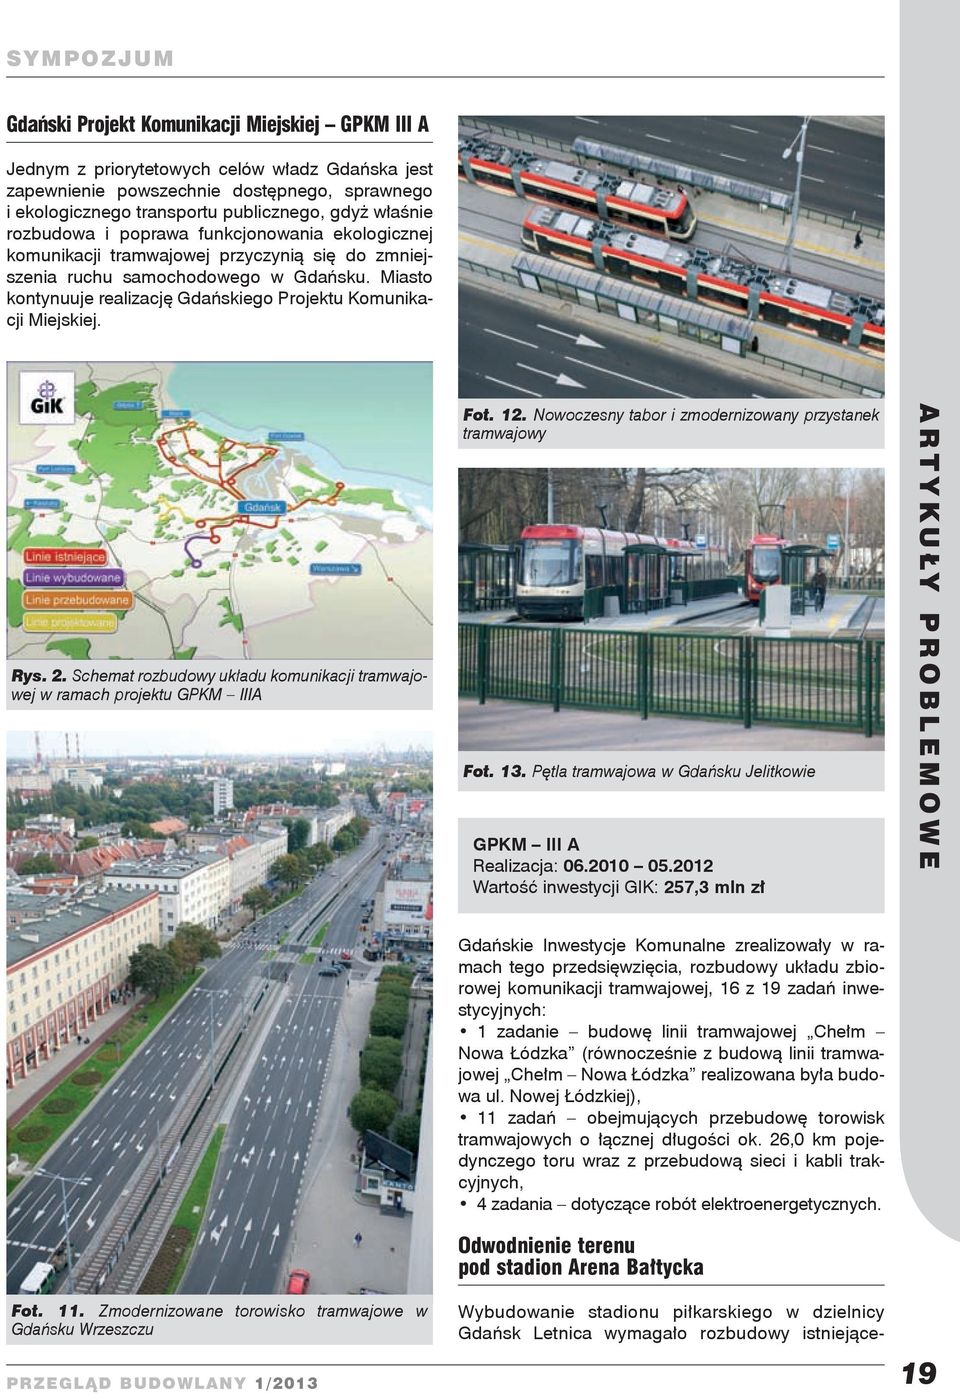 Miasto kontynuuje realizację Gdańskiego Projektu Komunikacji Miejskiej. Rys. 2. Schemat rozbudowy układu komunikacji tramwajowej w ramach projektu GPKM IIIA Fot. 12.